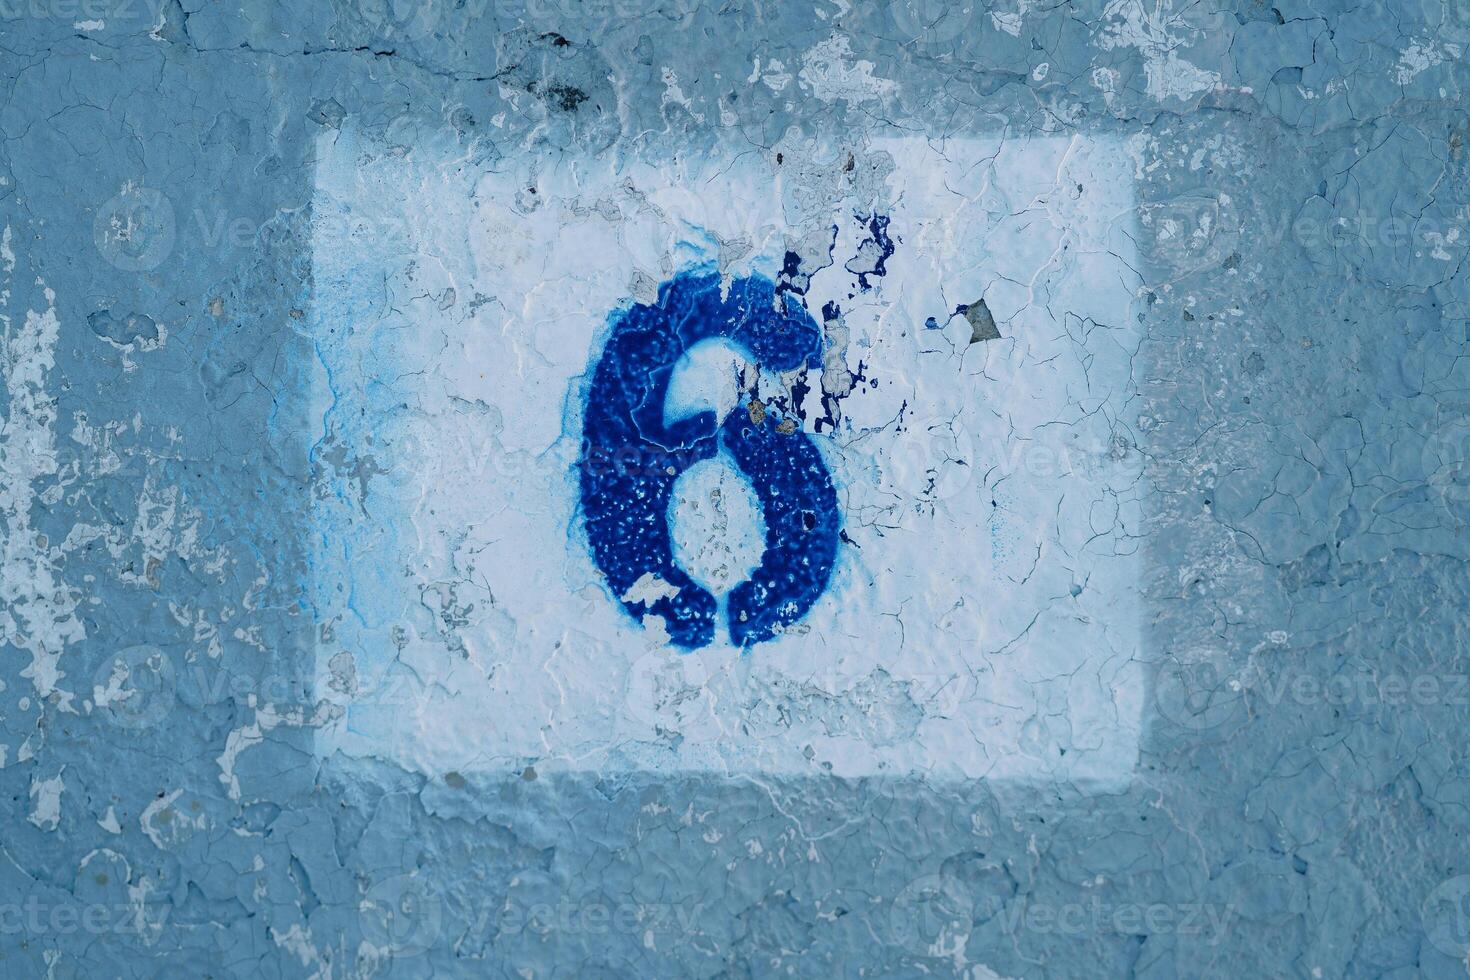 Nummer sechs gemalt auf ein Blau zerkratzt Mauer im ein Rechteck mit Peeling Farbe foto